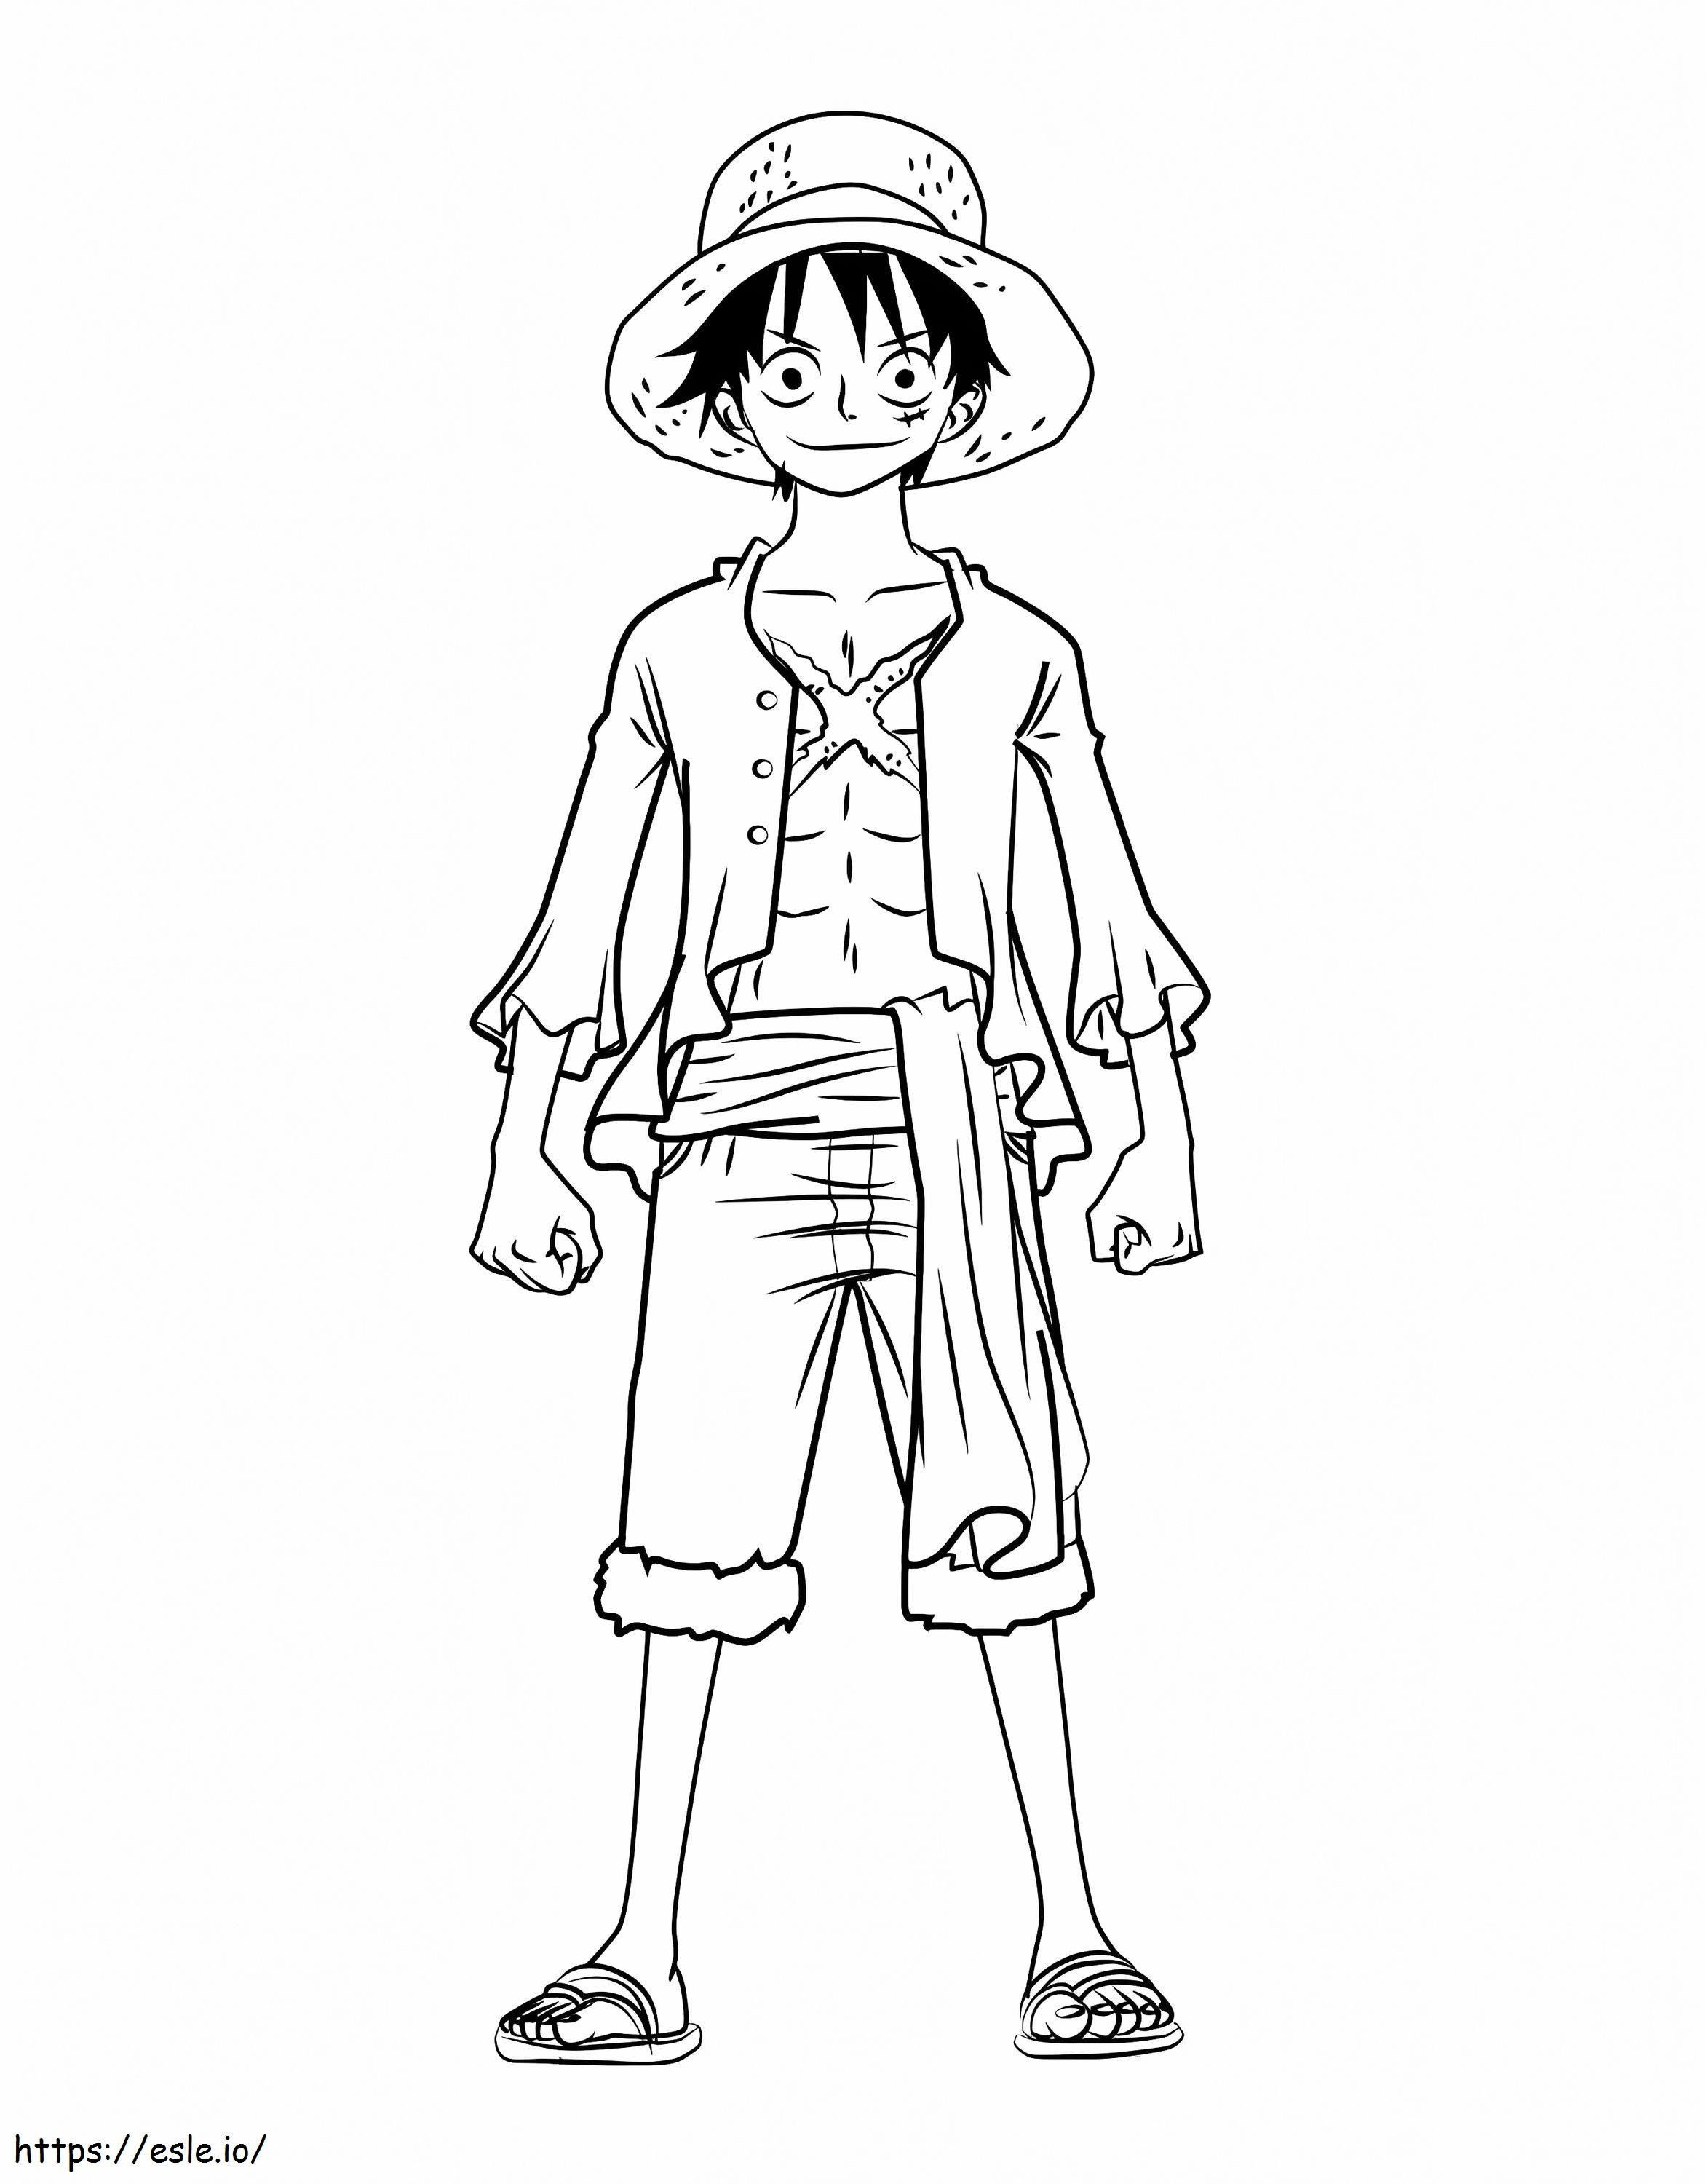  Cum să desenezi Monkey D Luffy întregul corp dintr-o singură bucată Pasul 0 de colorat